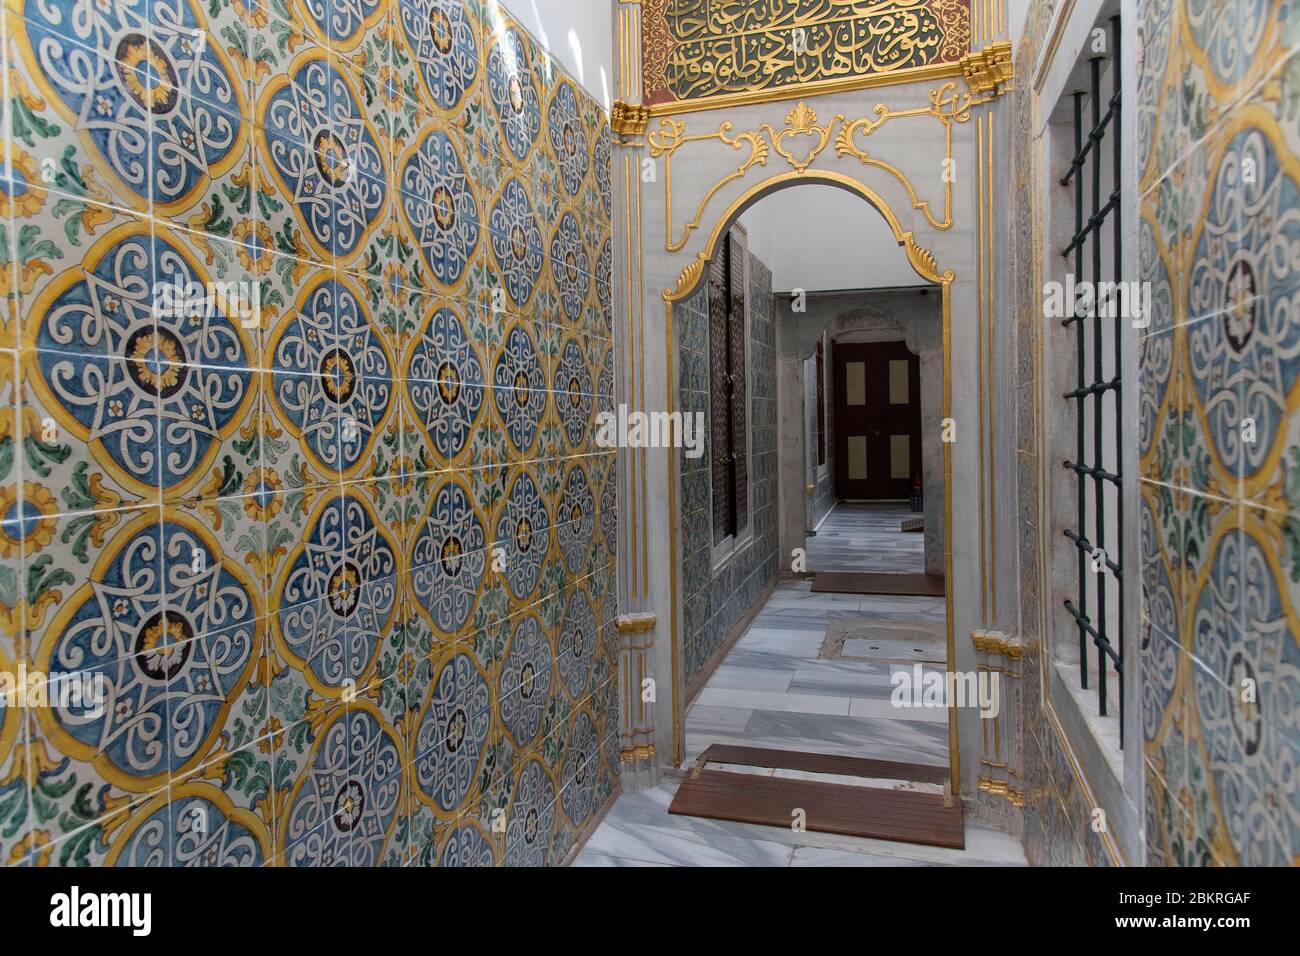 Turquie, Istanbul, palais de Topkapi, harem, dorures et mosaïques dans les couloirs des salles de douche Banque D'Images